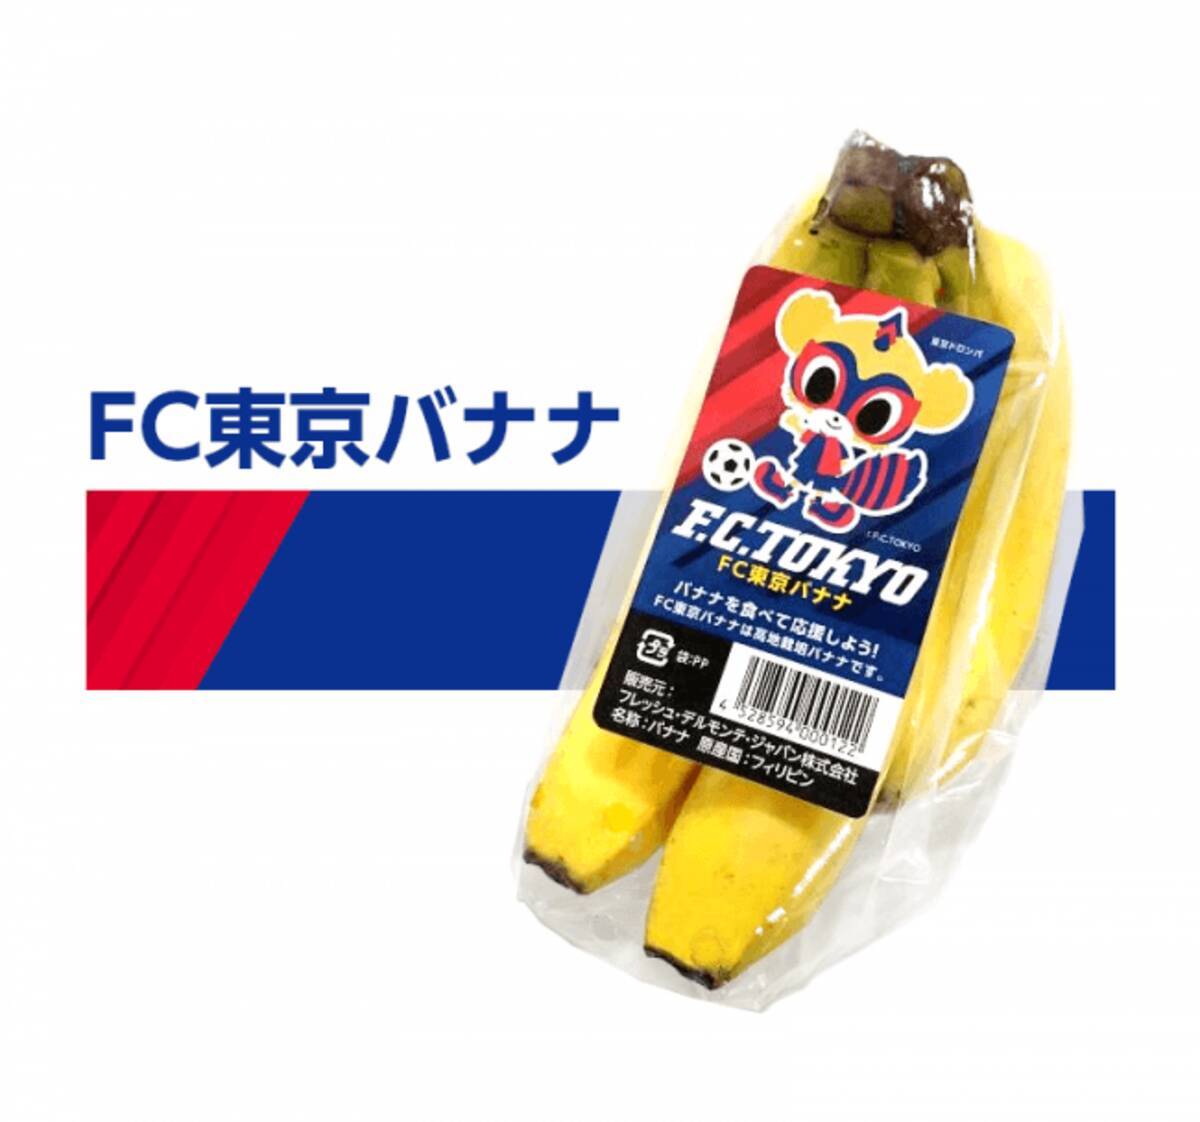 Fc東京バナナ 発売のお知らせ 19年6月27日 エキサイトニュース